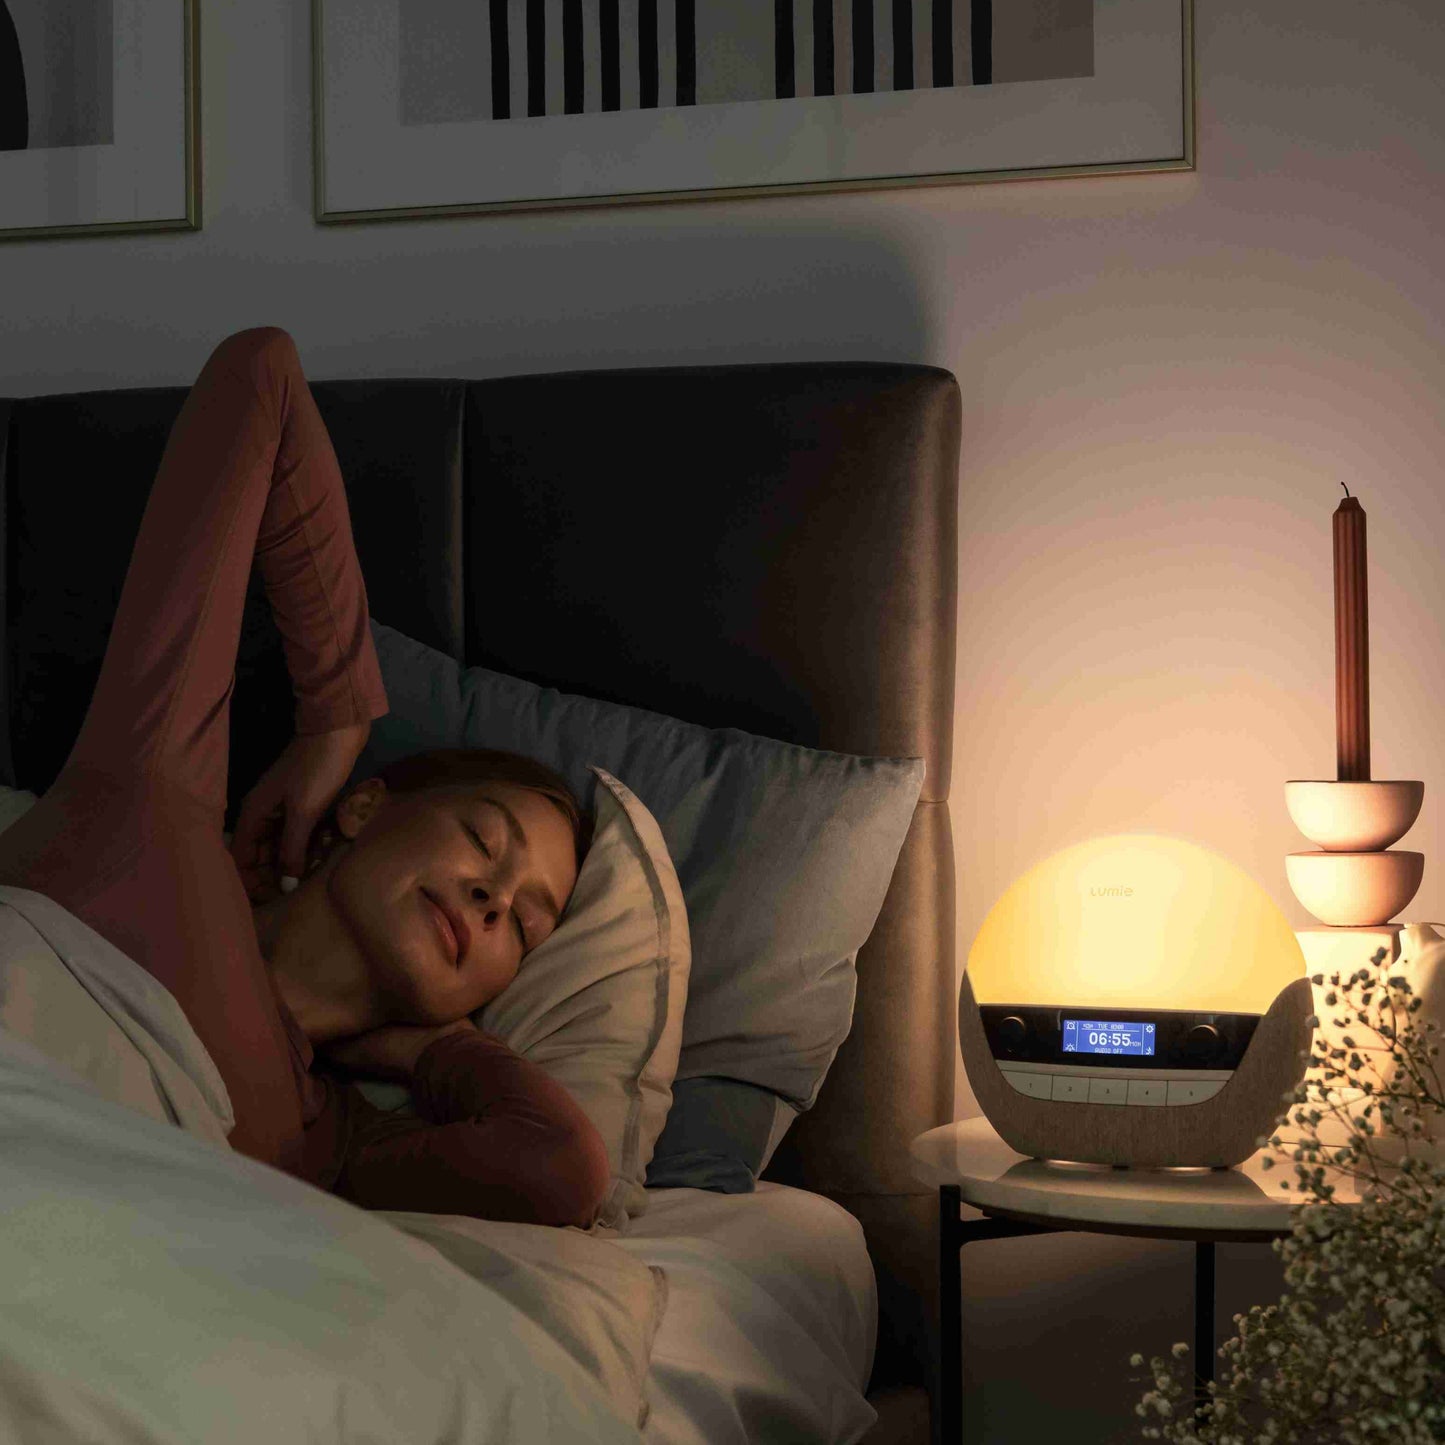 Lumie Bodyclock Luxe FM giver dig en lettere opvågning. Wake-up lampe. Høj kvalitet. Godkendt som Medicinsk Udstyr.